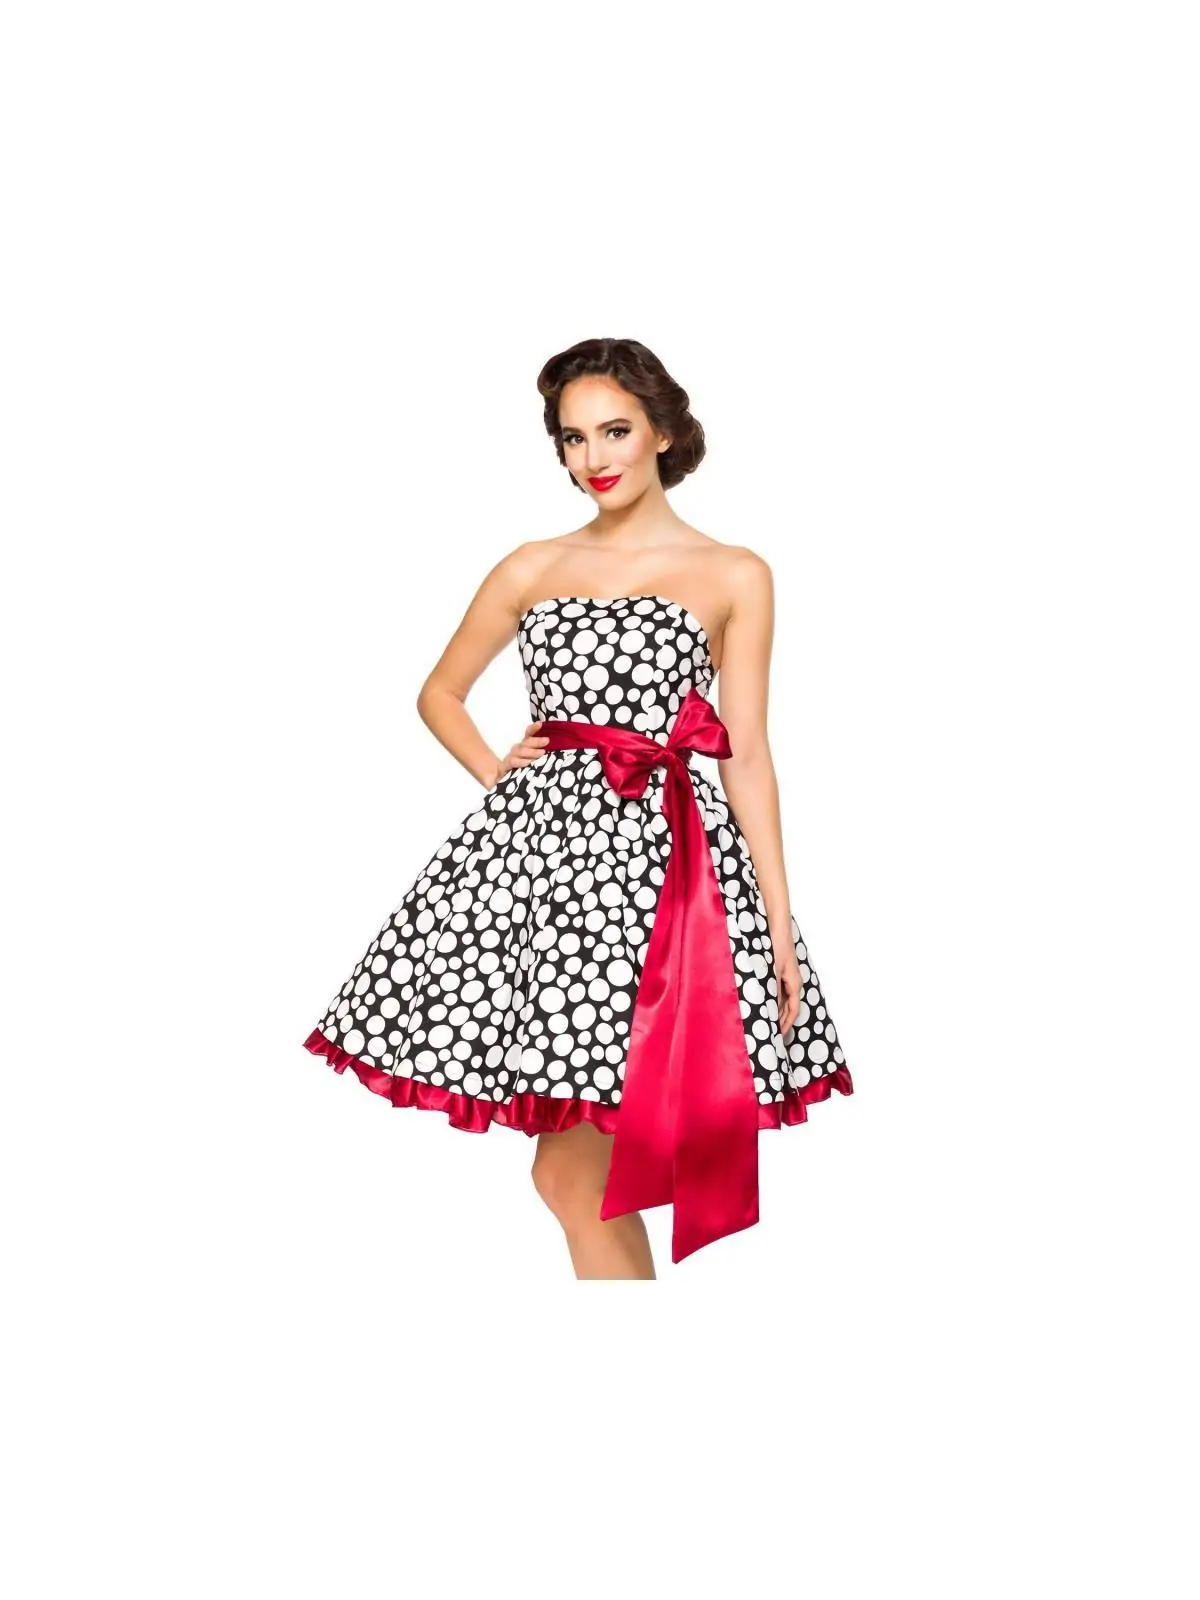 SONDERPOSTEN Vintage-Bandeau-Kleid schwarz/weiß/rot von Belsira